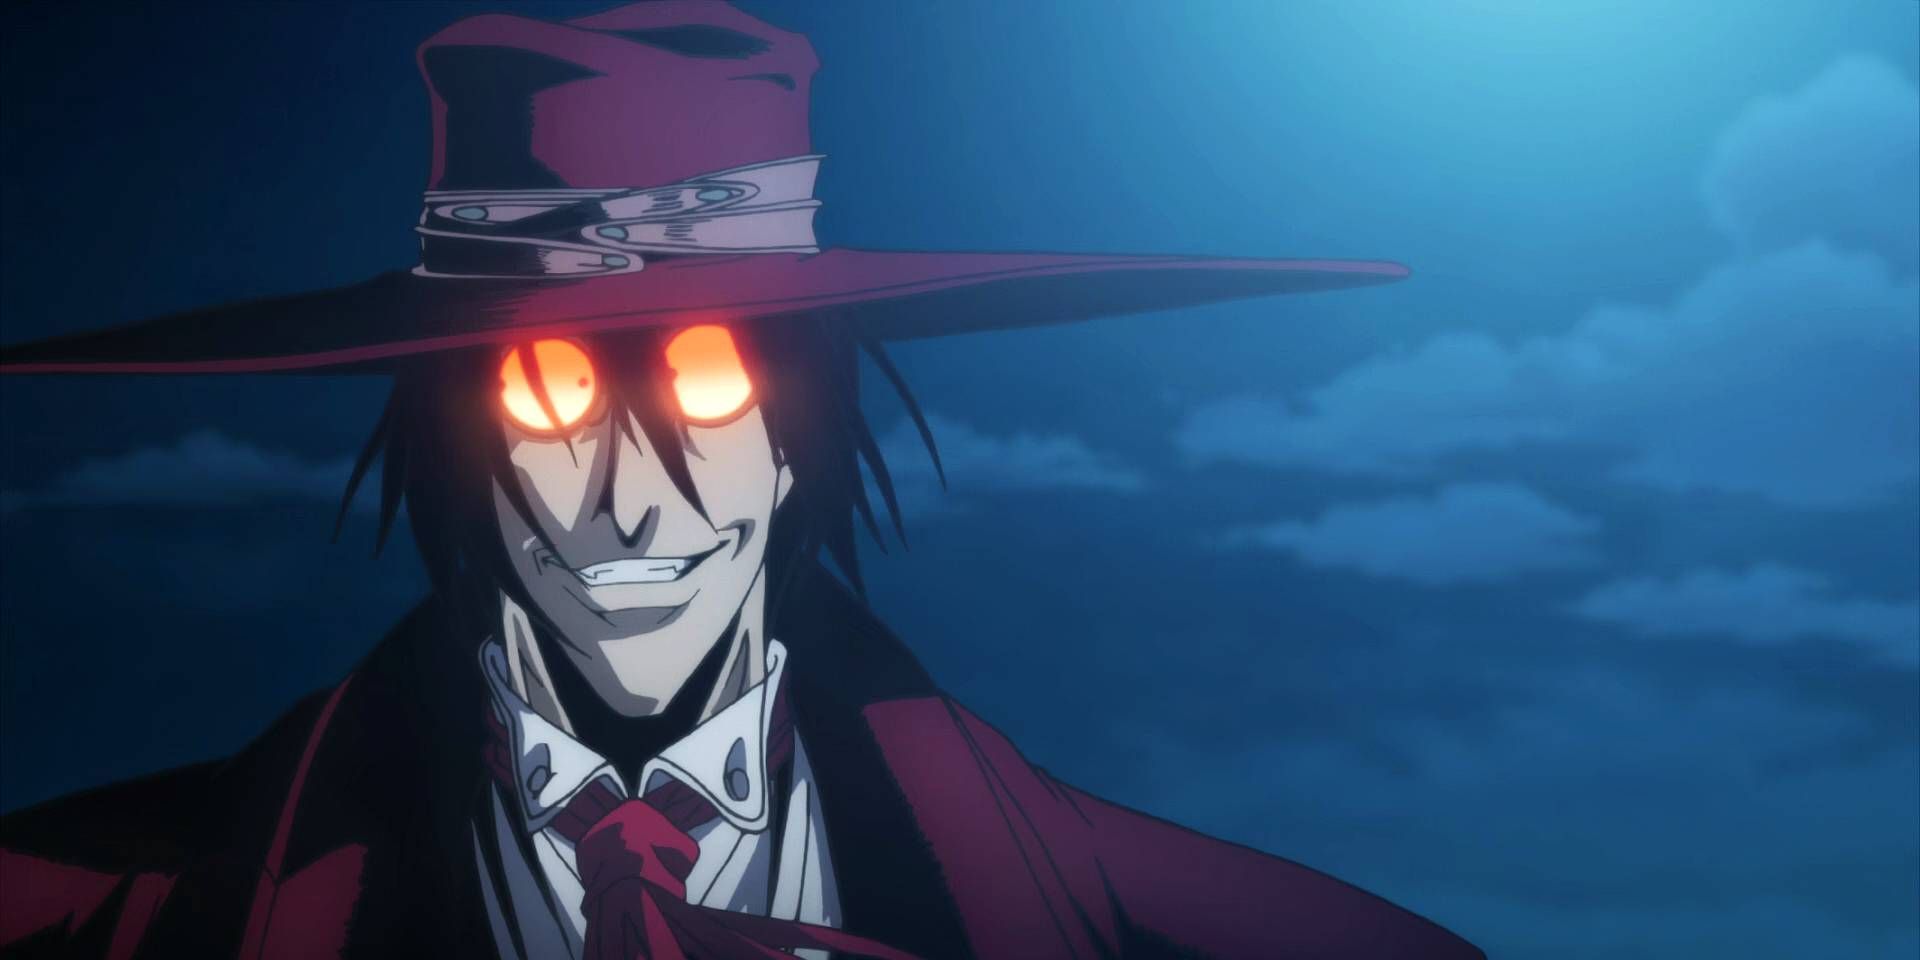 Alucard vampire in Hellsing anime